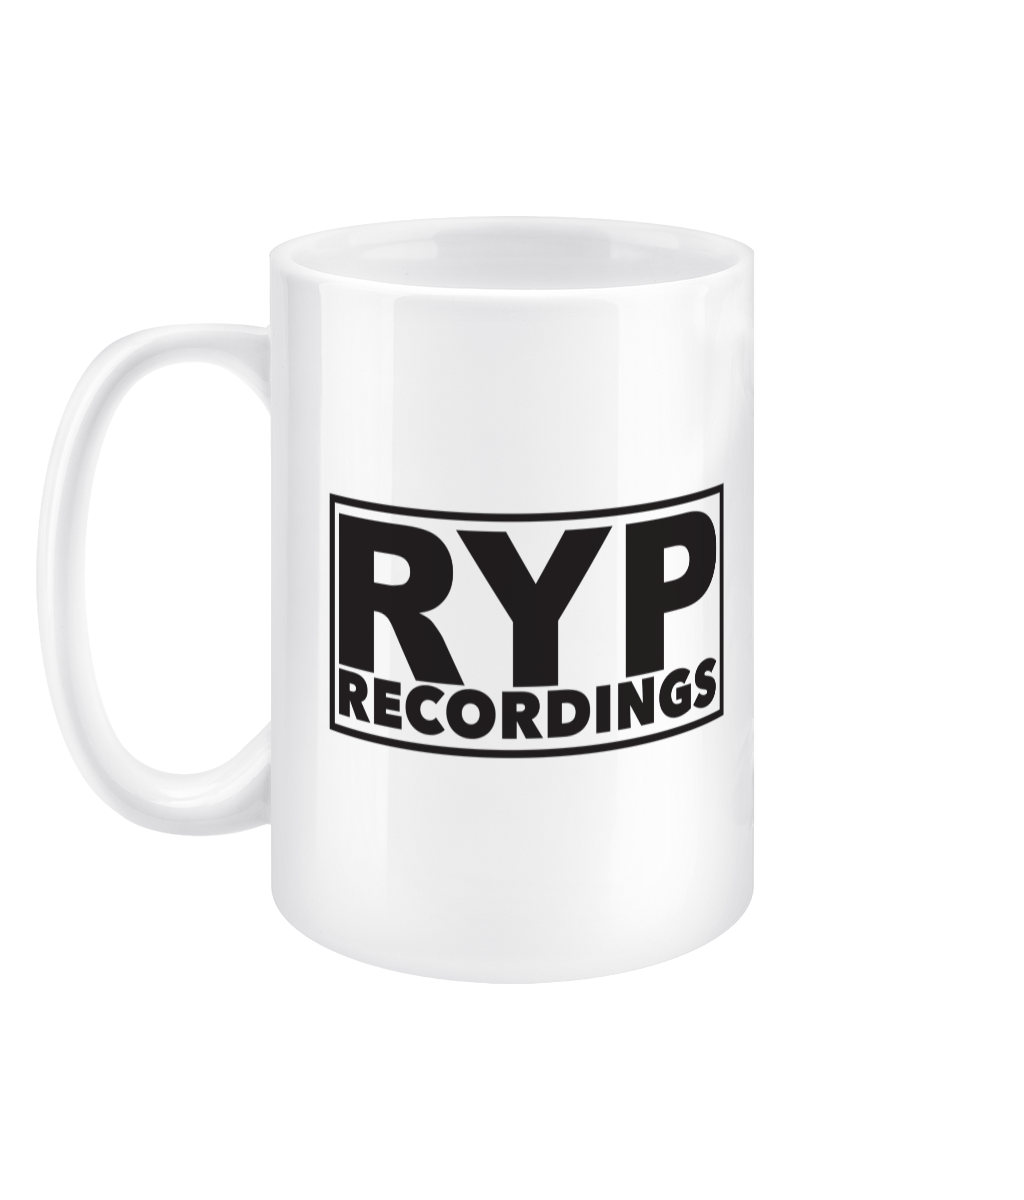 RYP Recordings Tall Mug, 15oz